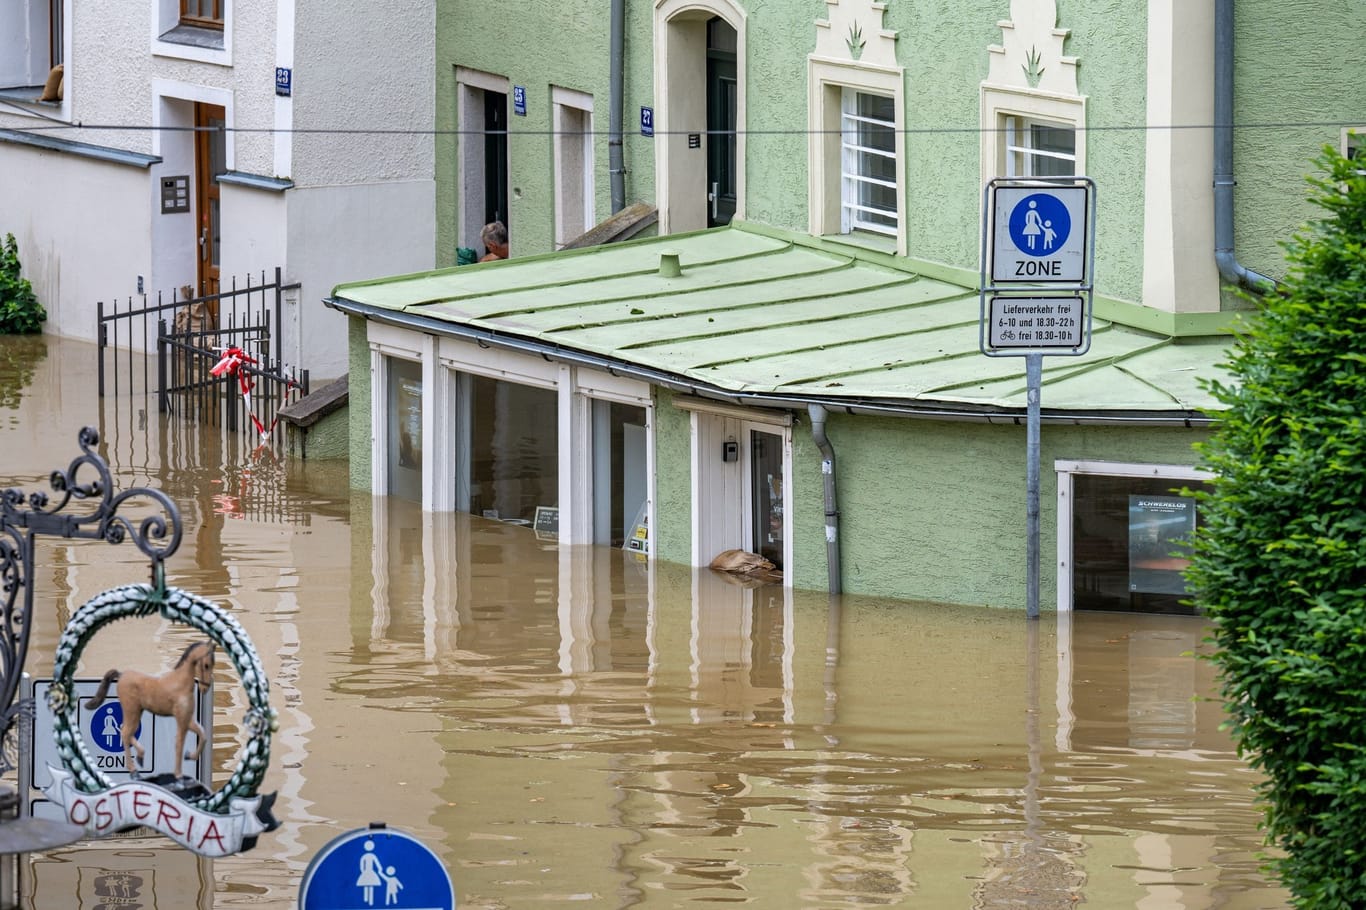 Hochwasser in Bayern - Passau